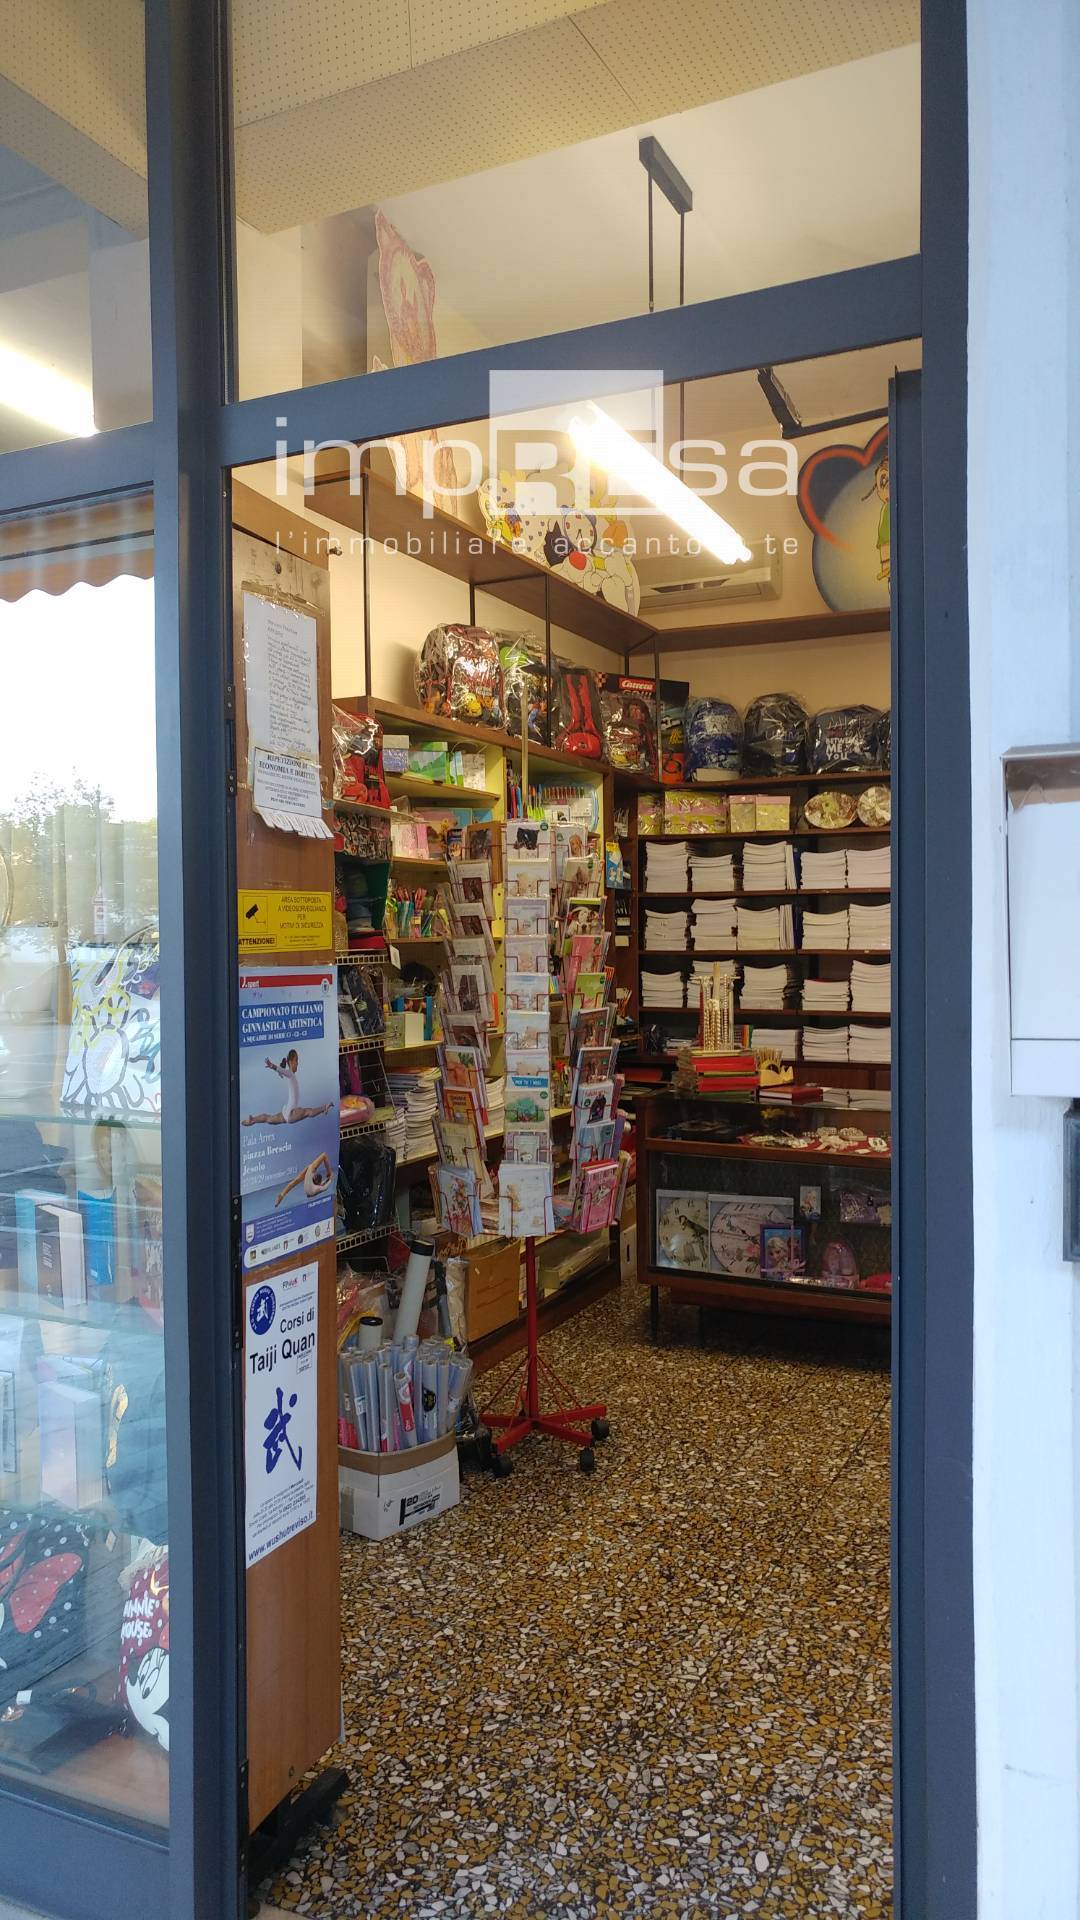 Locale commerciale in vendita, Treviso s. liberale